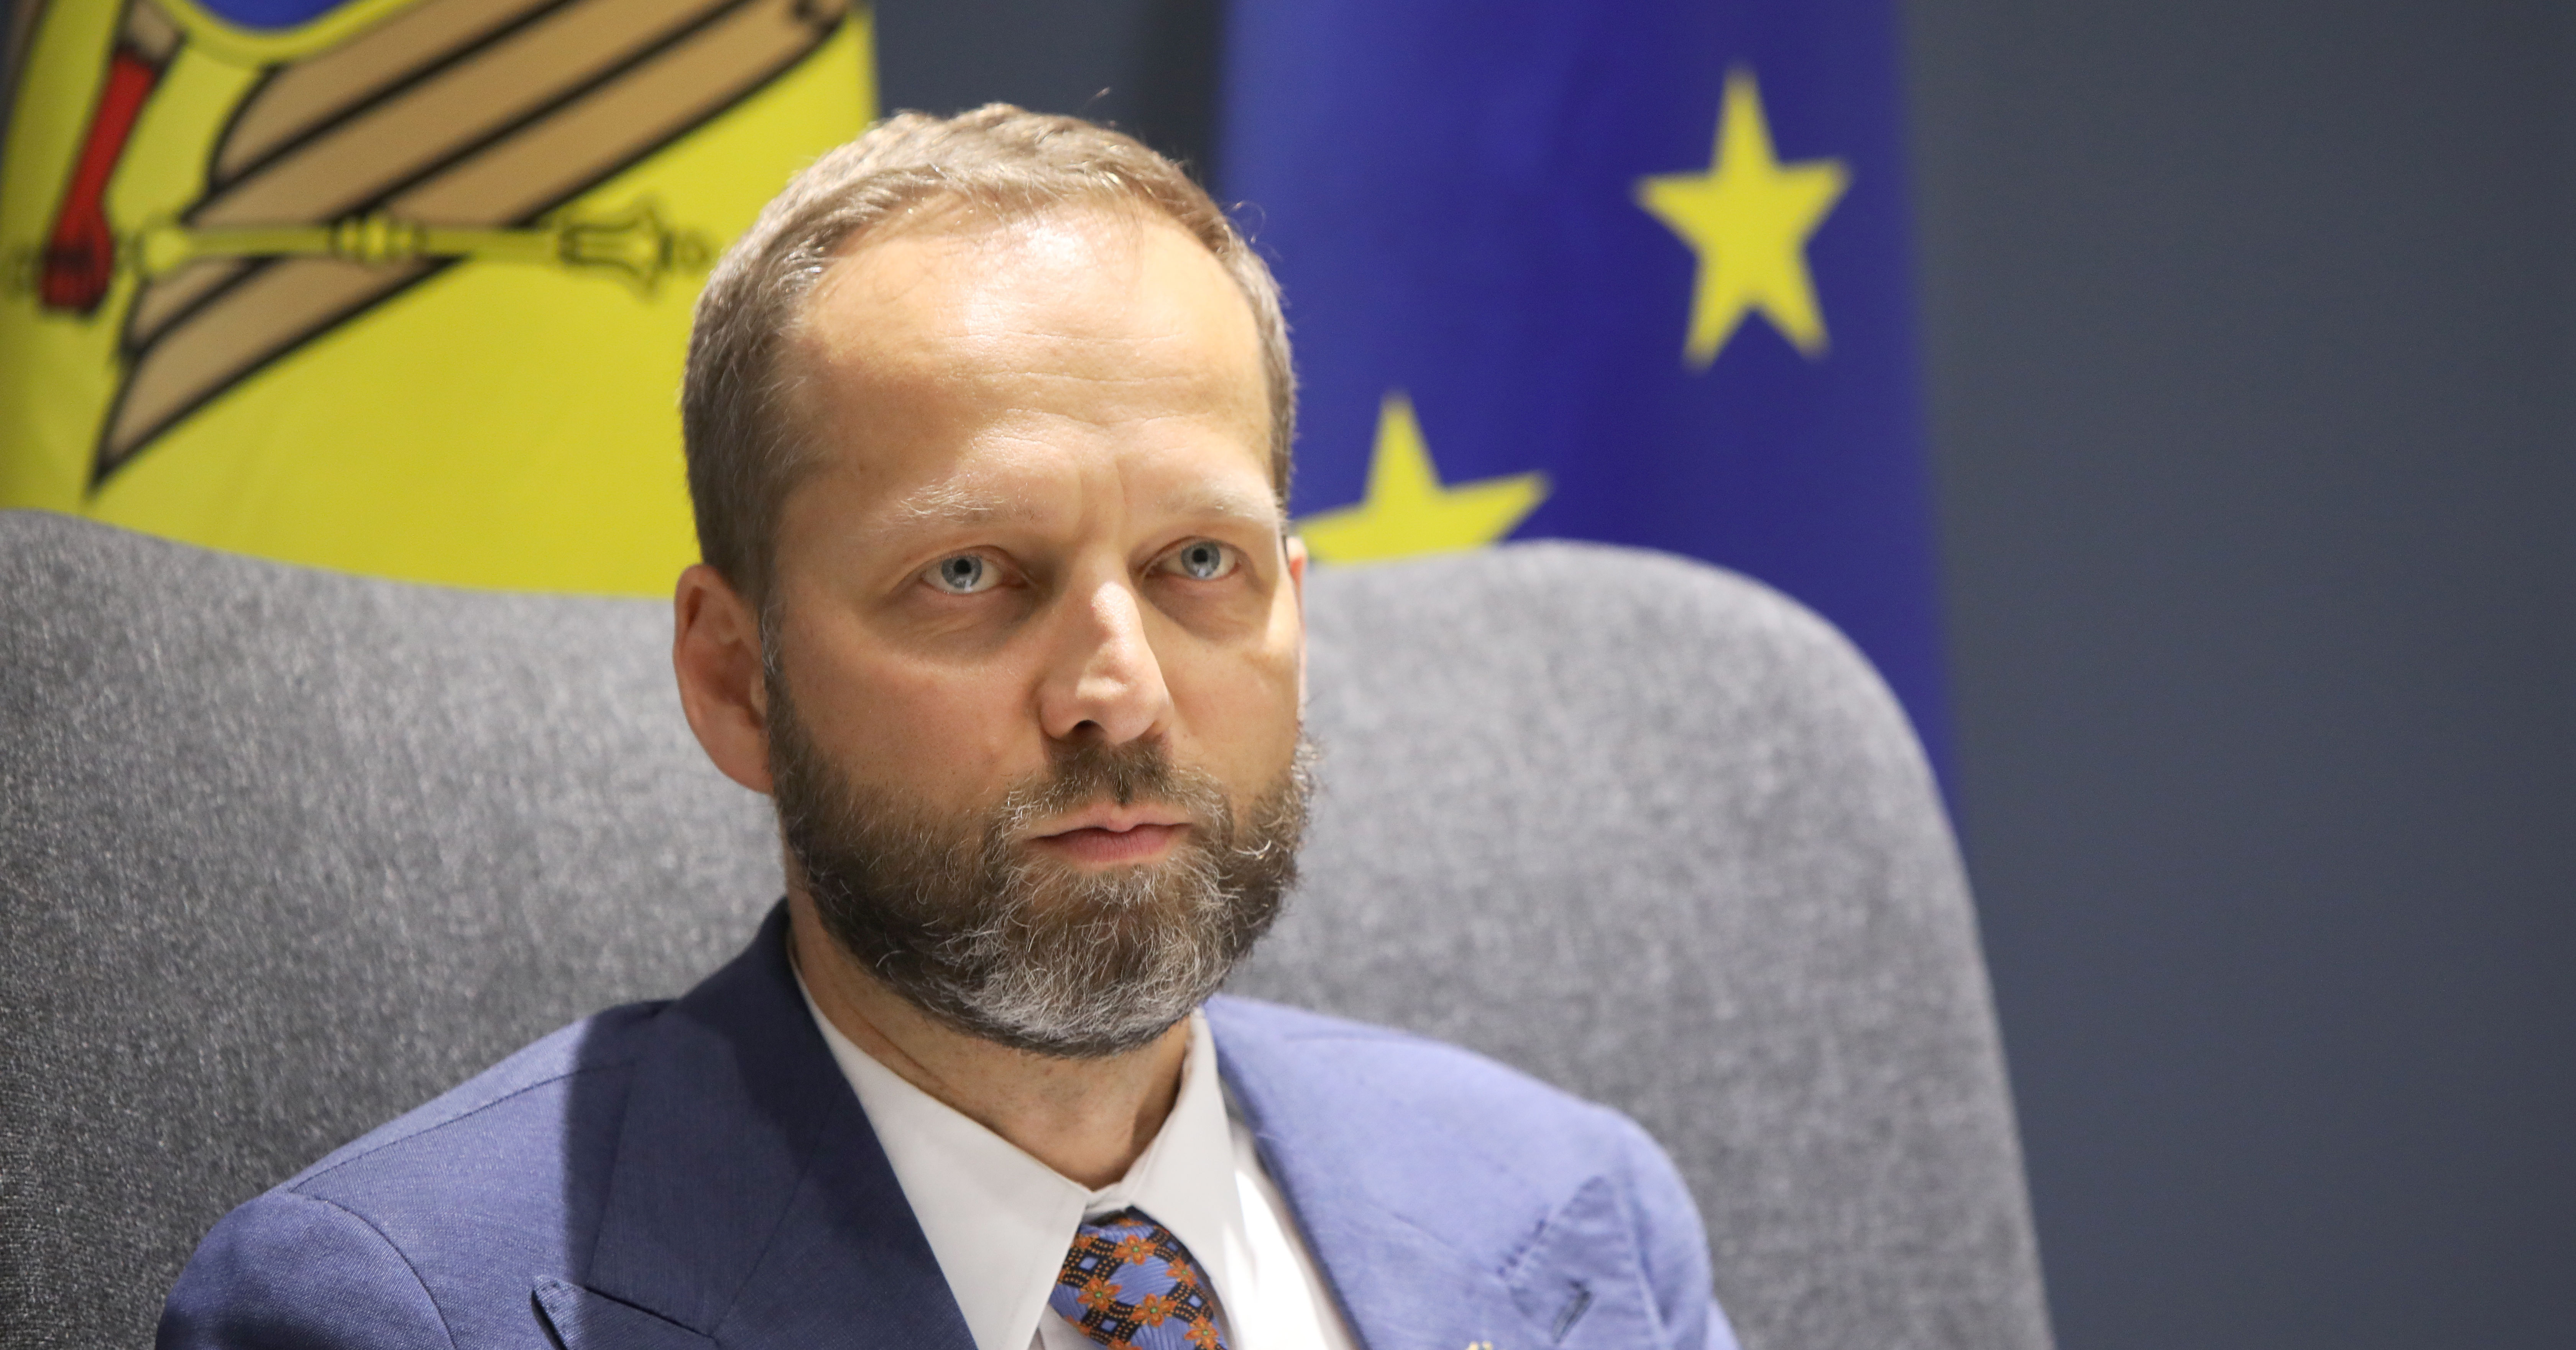 Мажейкс: ЕС рассчитывает, что Молдова будет присоединяться к санкциям против РФ.